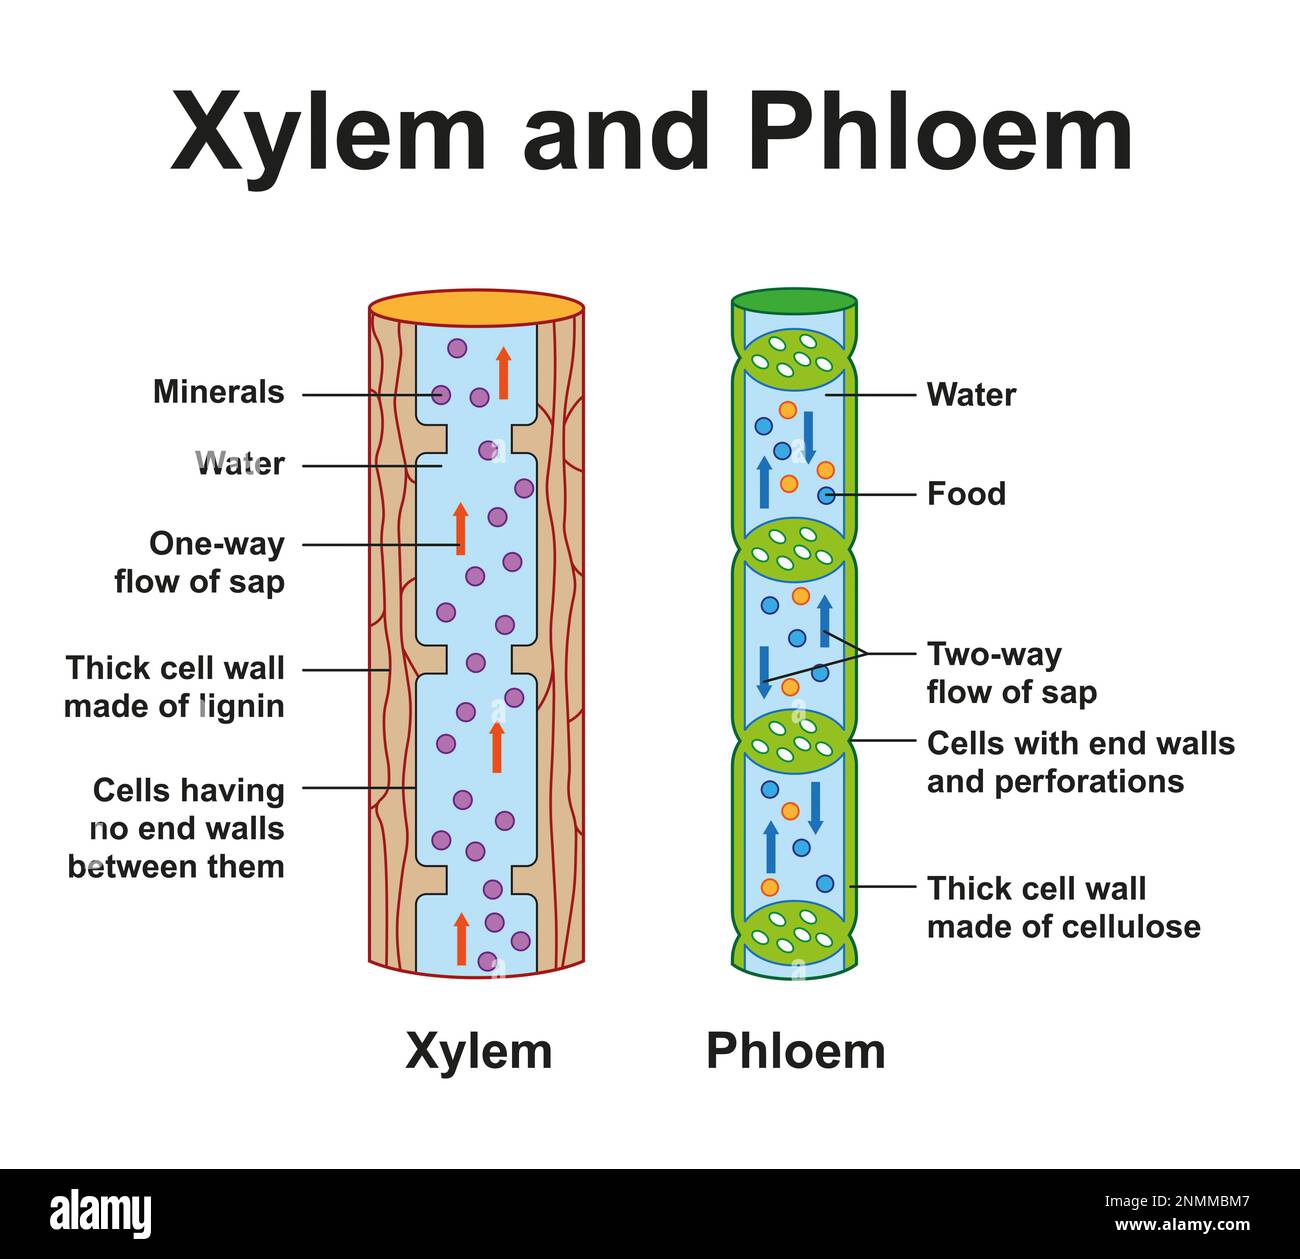 Xylem and phloem, illustration Stock Photo